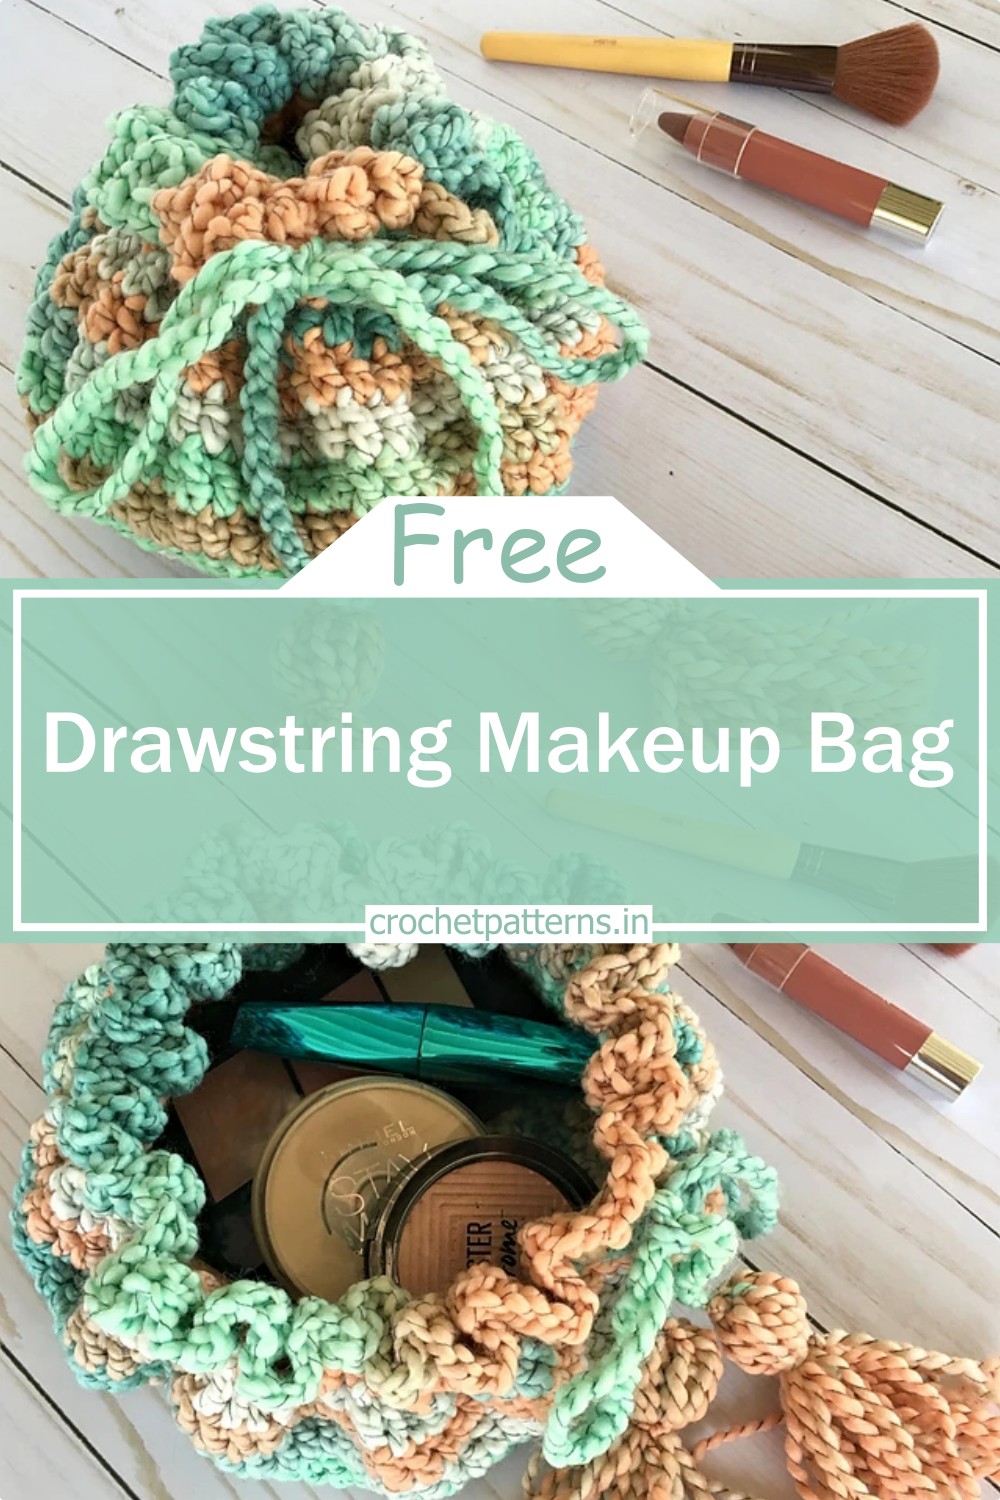 Drawstring Makeup Bag